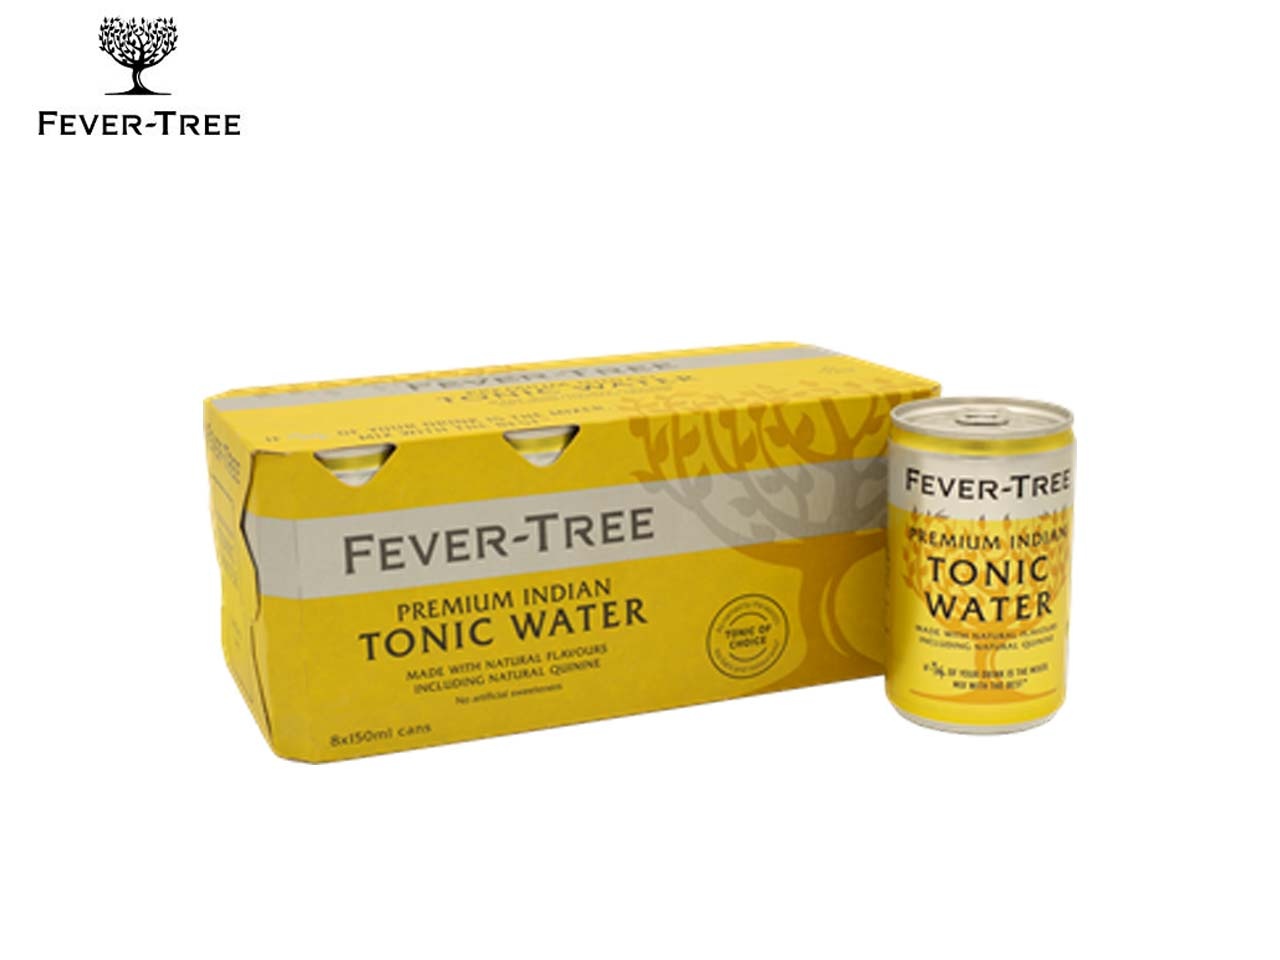 Fever-Tree lance un nouveau format cannette pour son Premium Indian Tonic Water